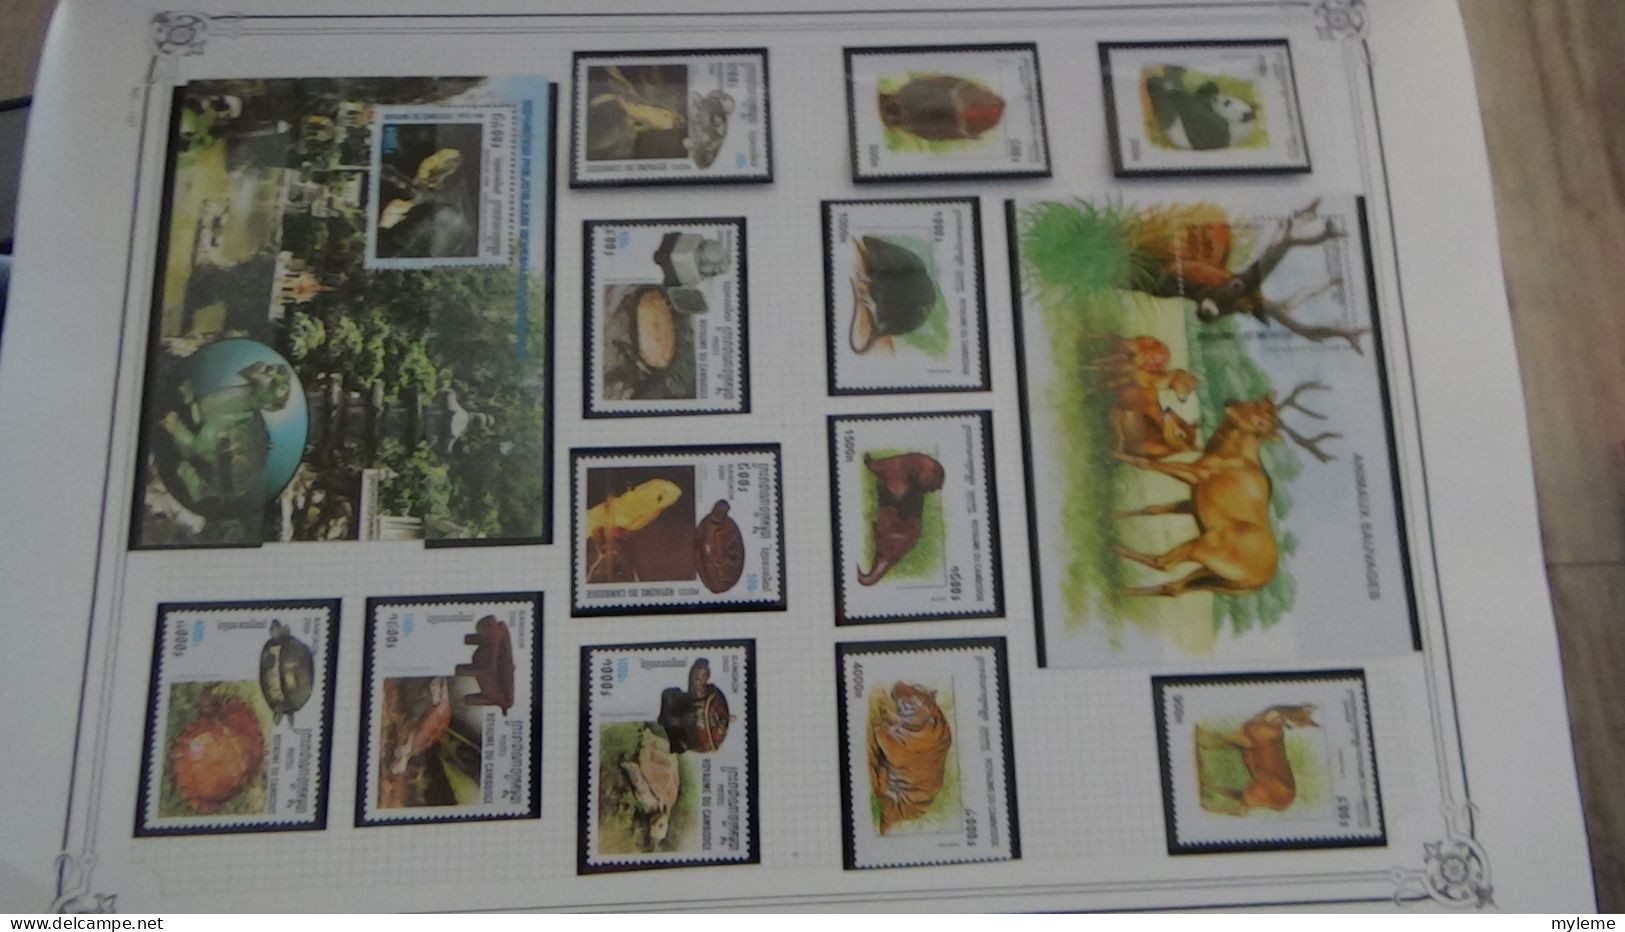 BC102 Collection de timbres et blocs ** du Cambodge sur feuille d'album.  A saisir !!!